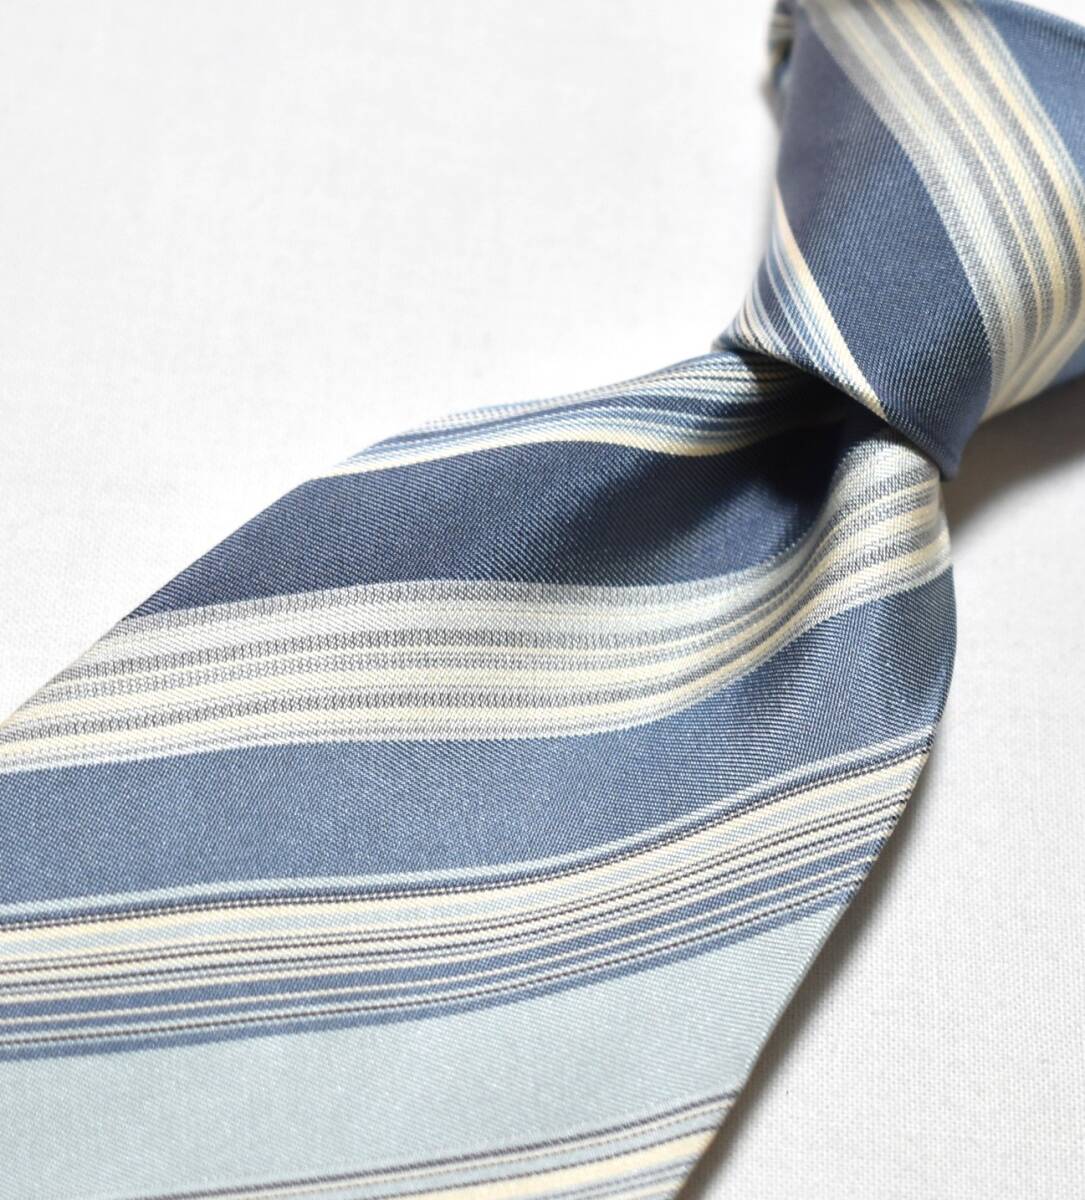 Z443* Durban necktie stripe pattern *